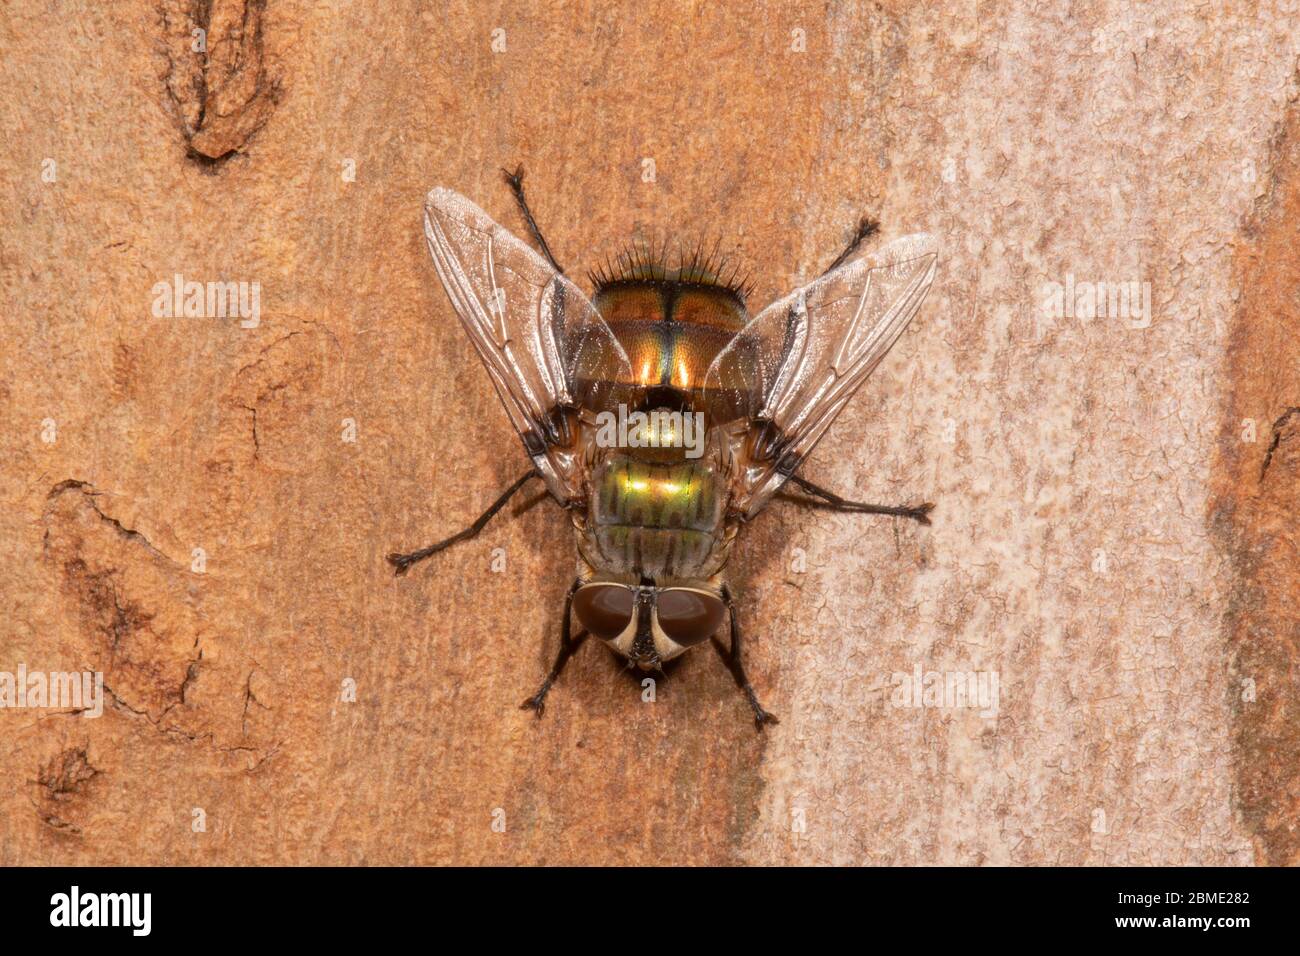 Eine Fliege auf Rinde, Northern Territory, NT, Australien Stockfoto